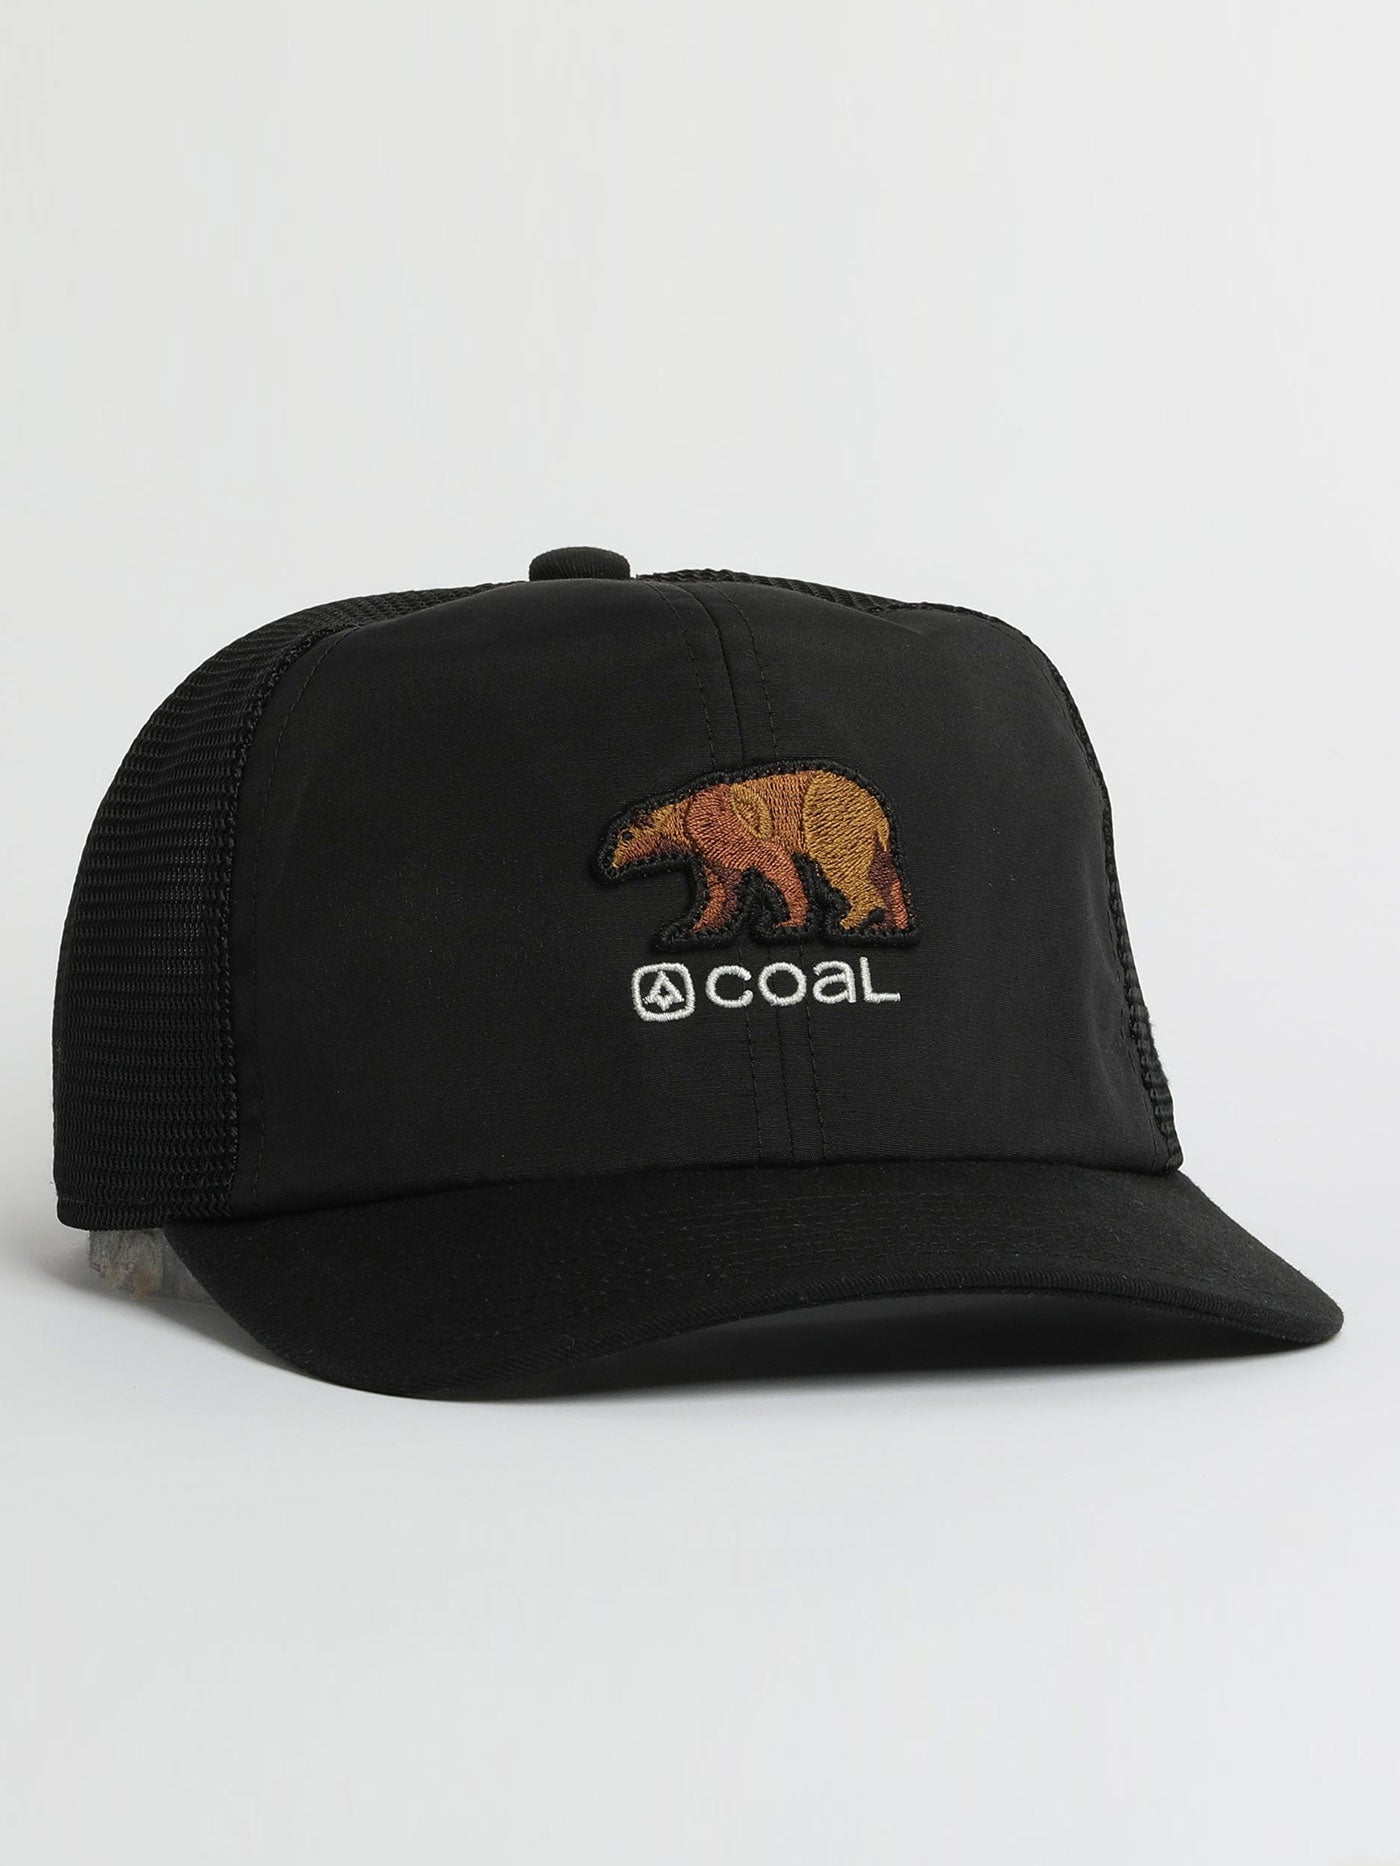 Coal The Zephyr Trucker Hat